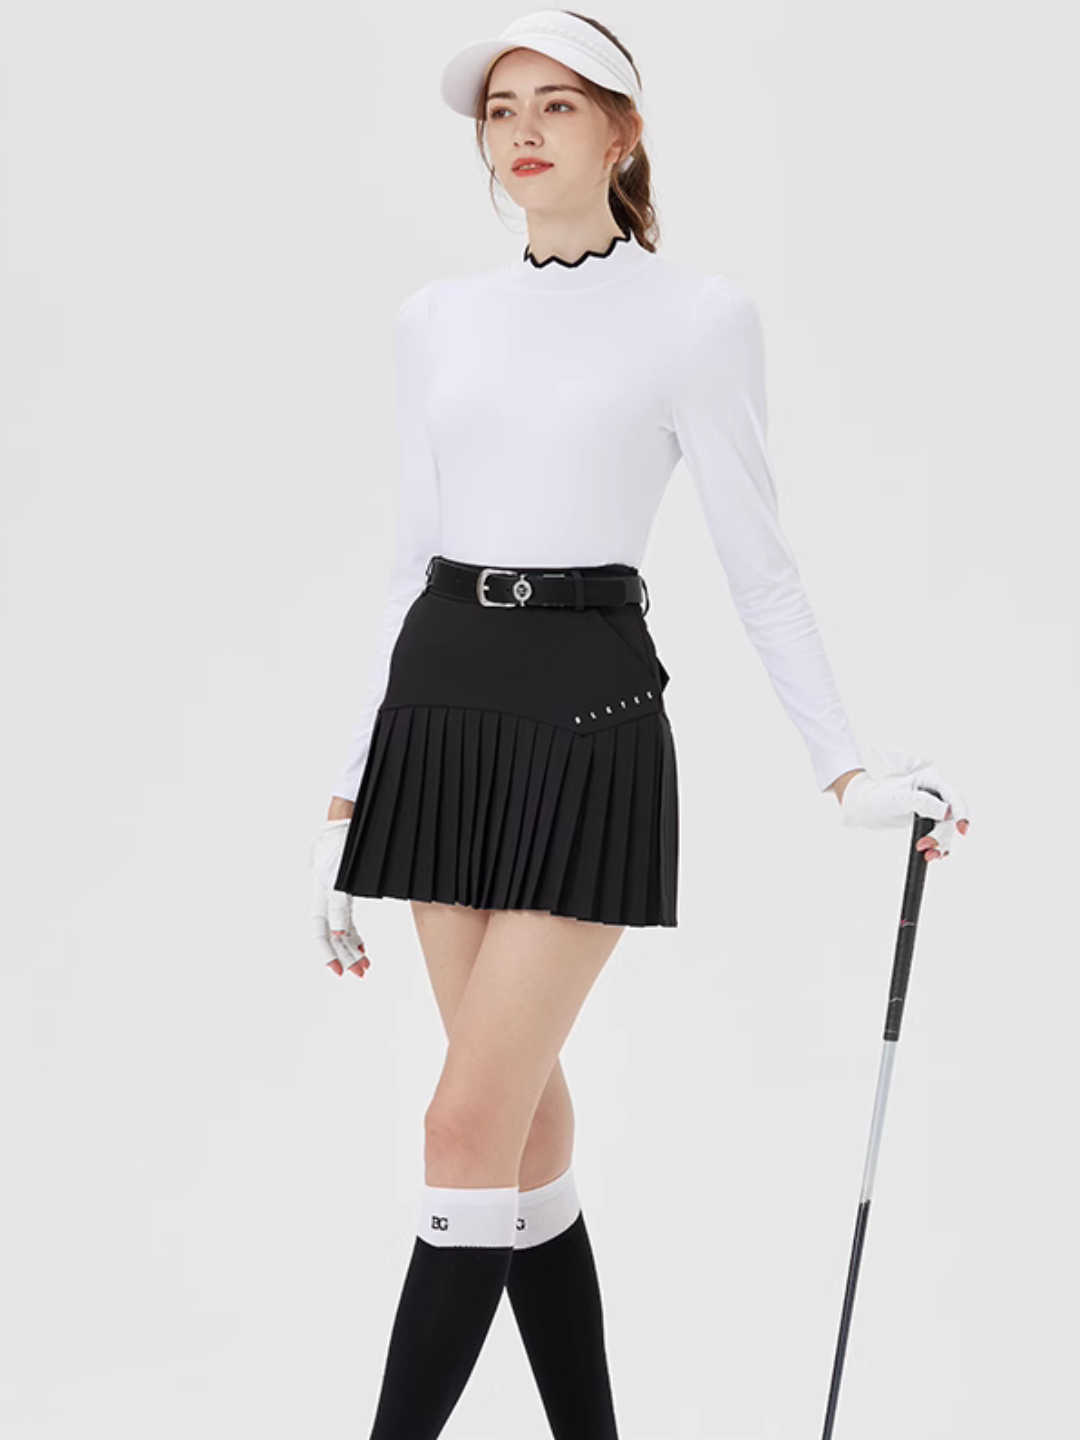 Slim Sportswear High-end Golf Tops CH434